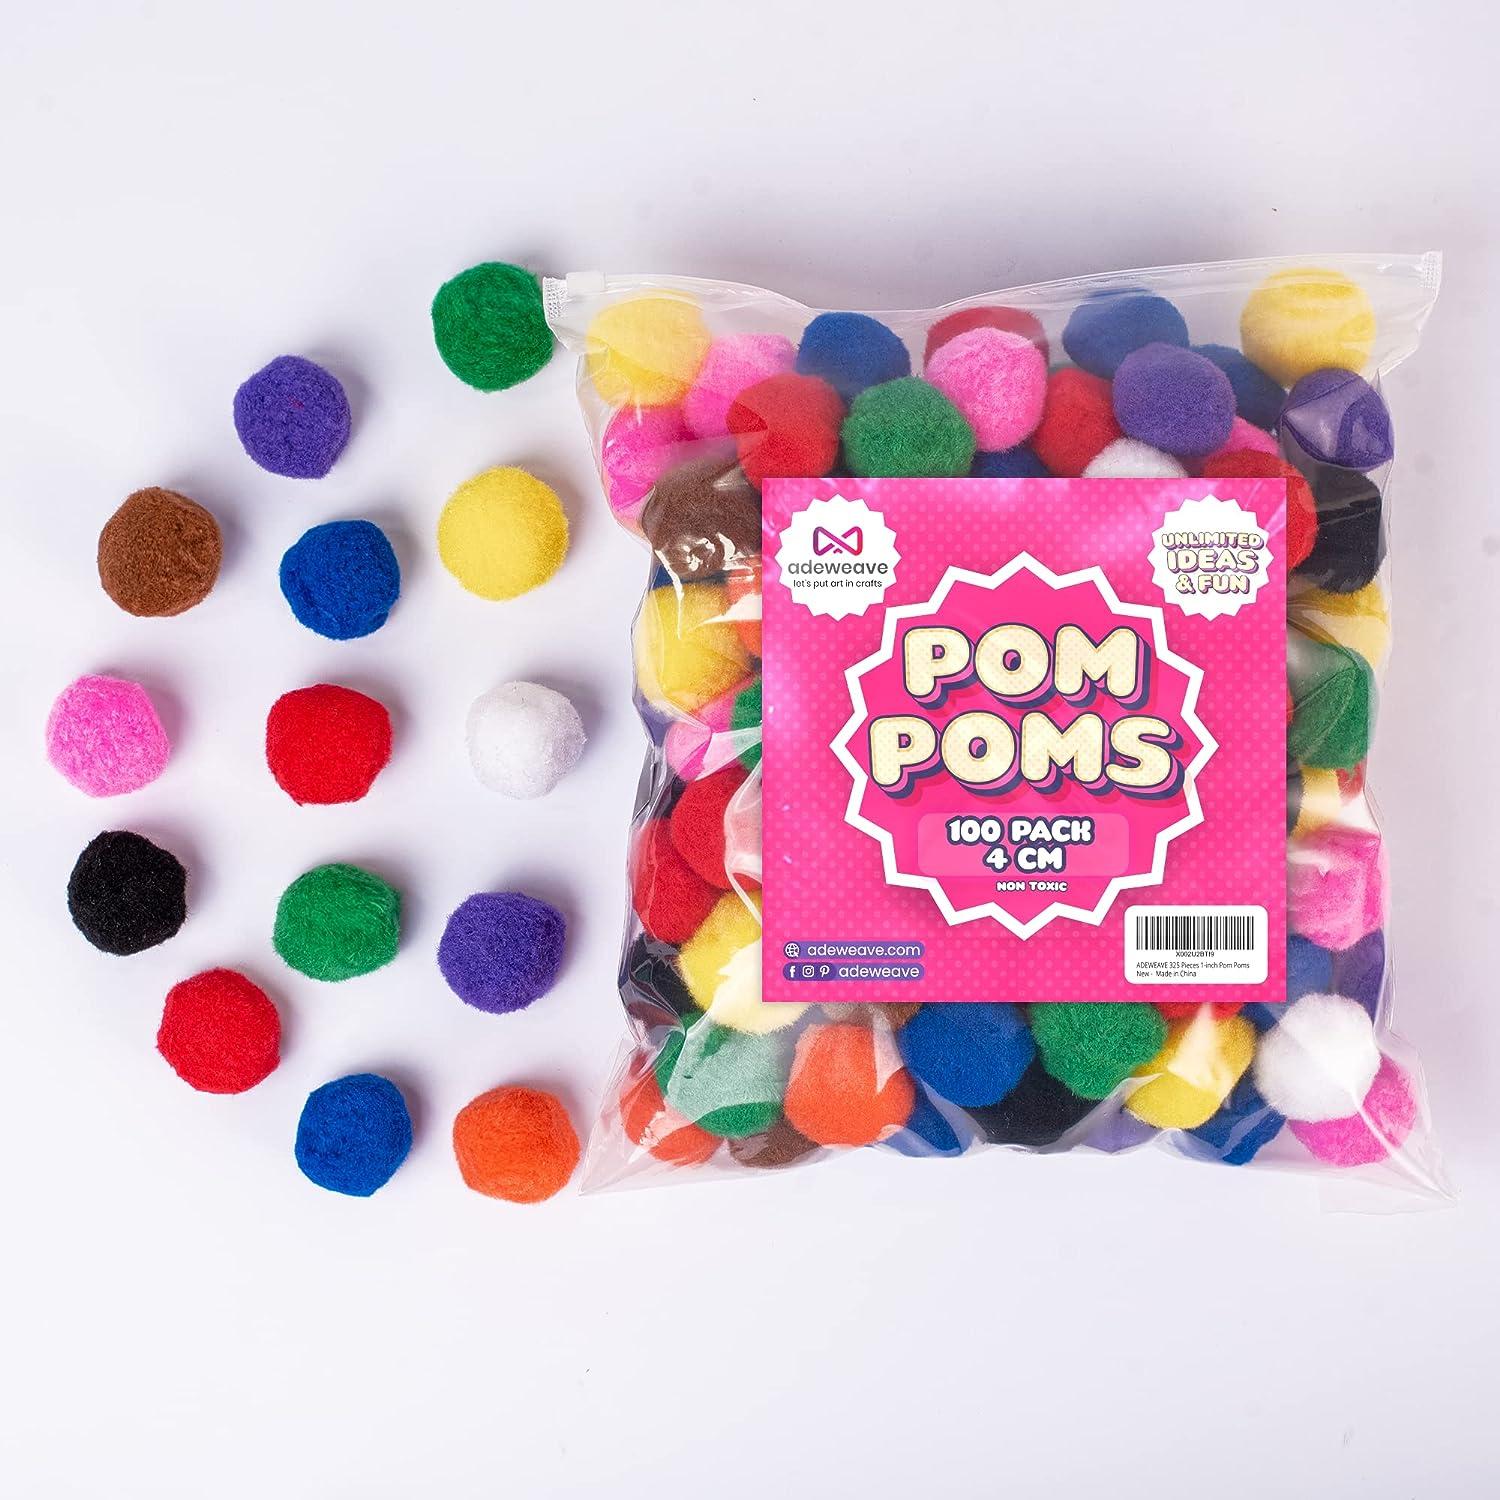 Multicolor Paper Pom Poms (20 Pack) - Avoseta